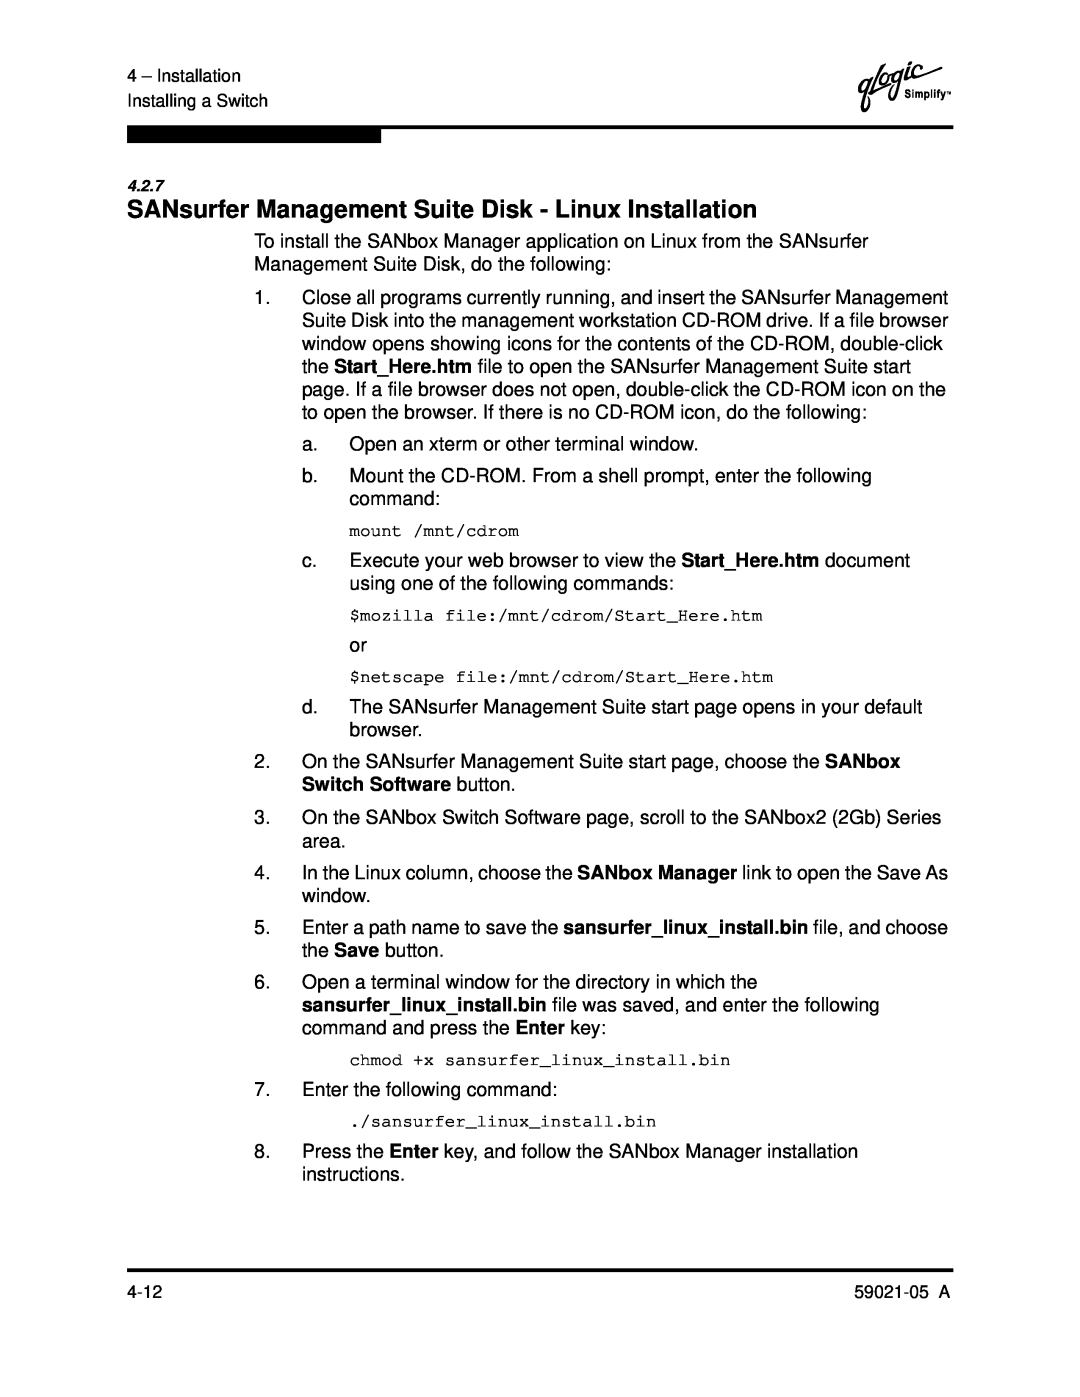 Q-Logic 59021-05 manual SANsurfer Management Suite Disk - Linux Installation, mount /mnt/cdrom, sansurferlinuxinstall.bin 